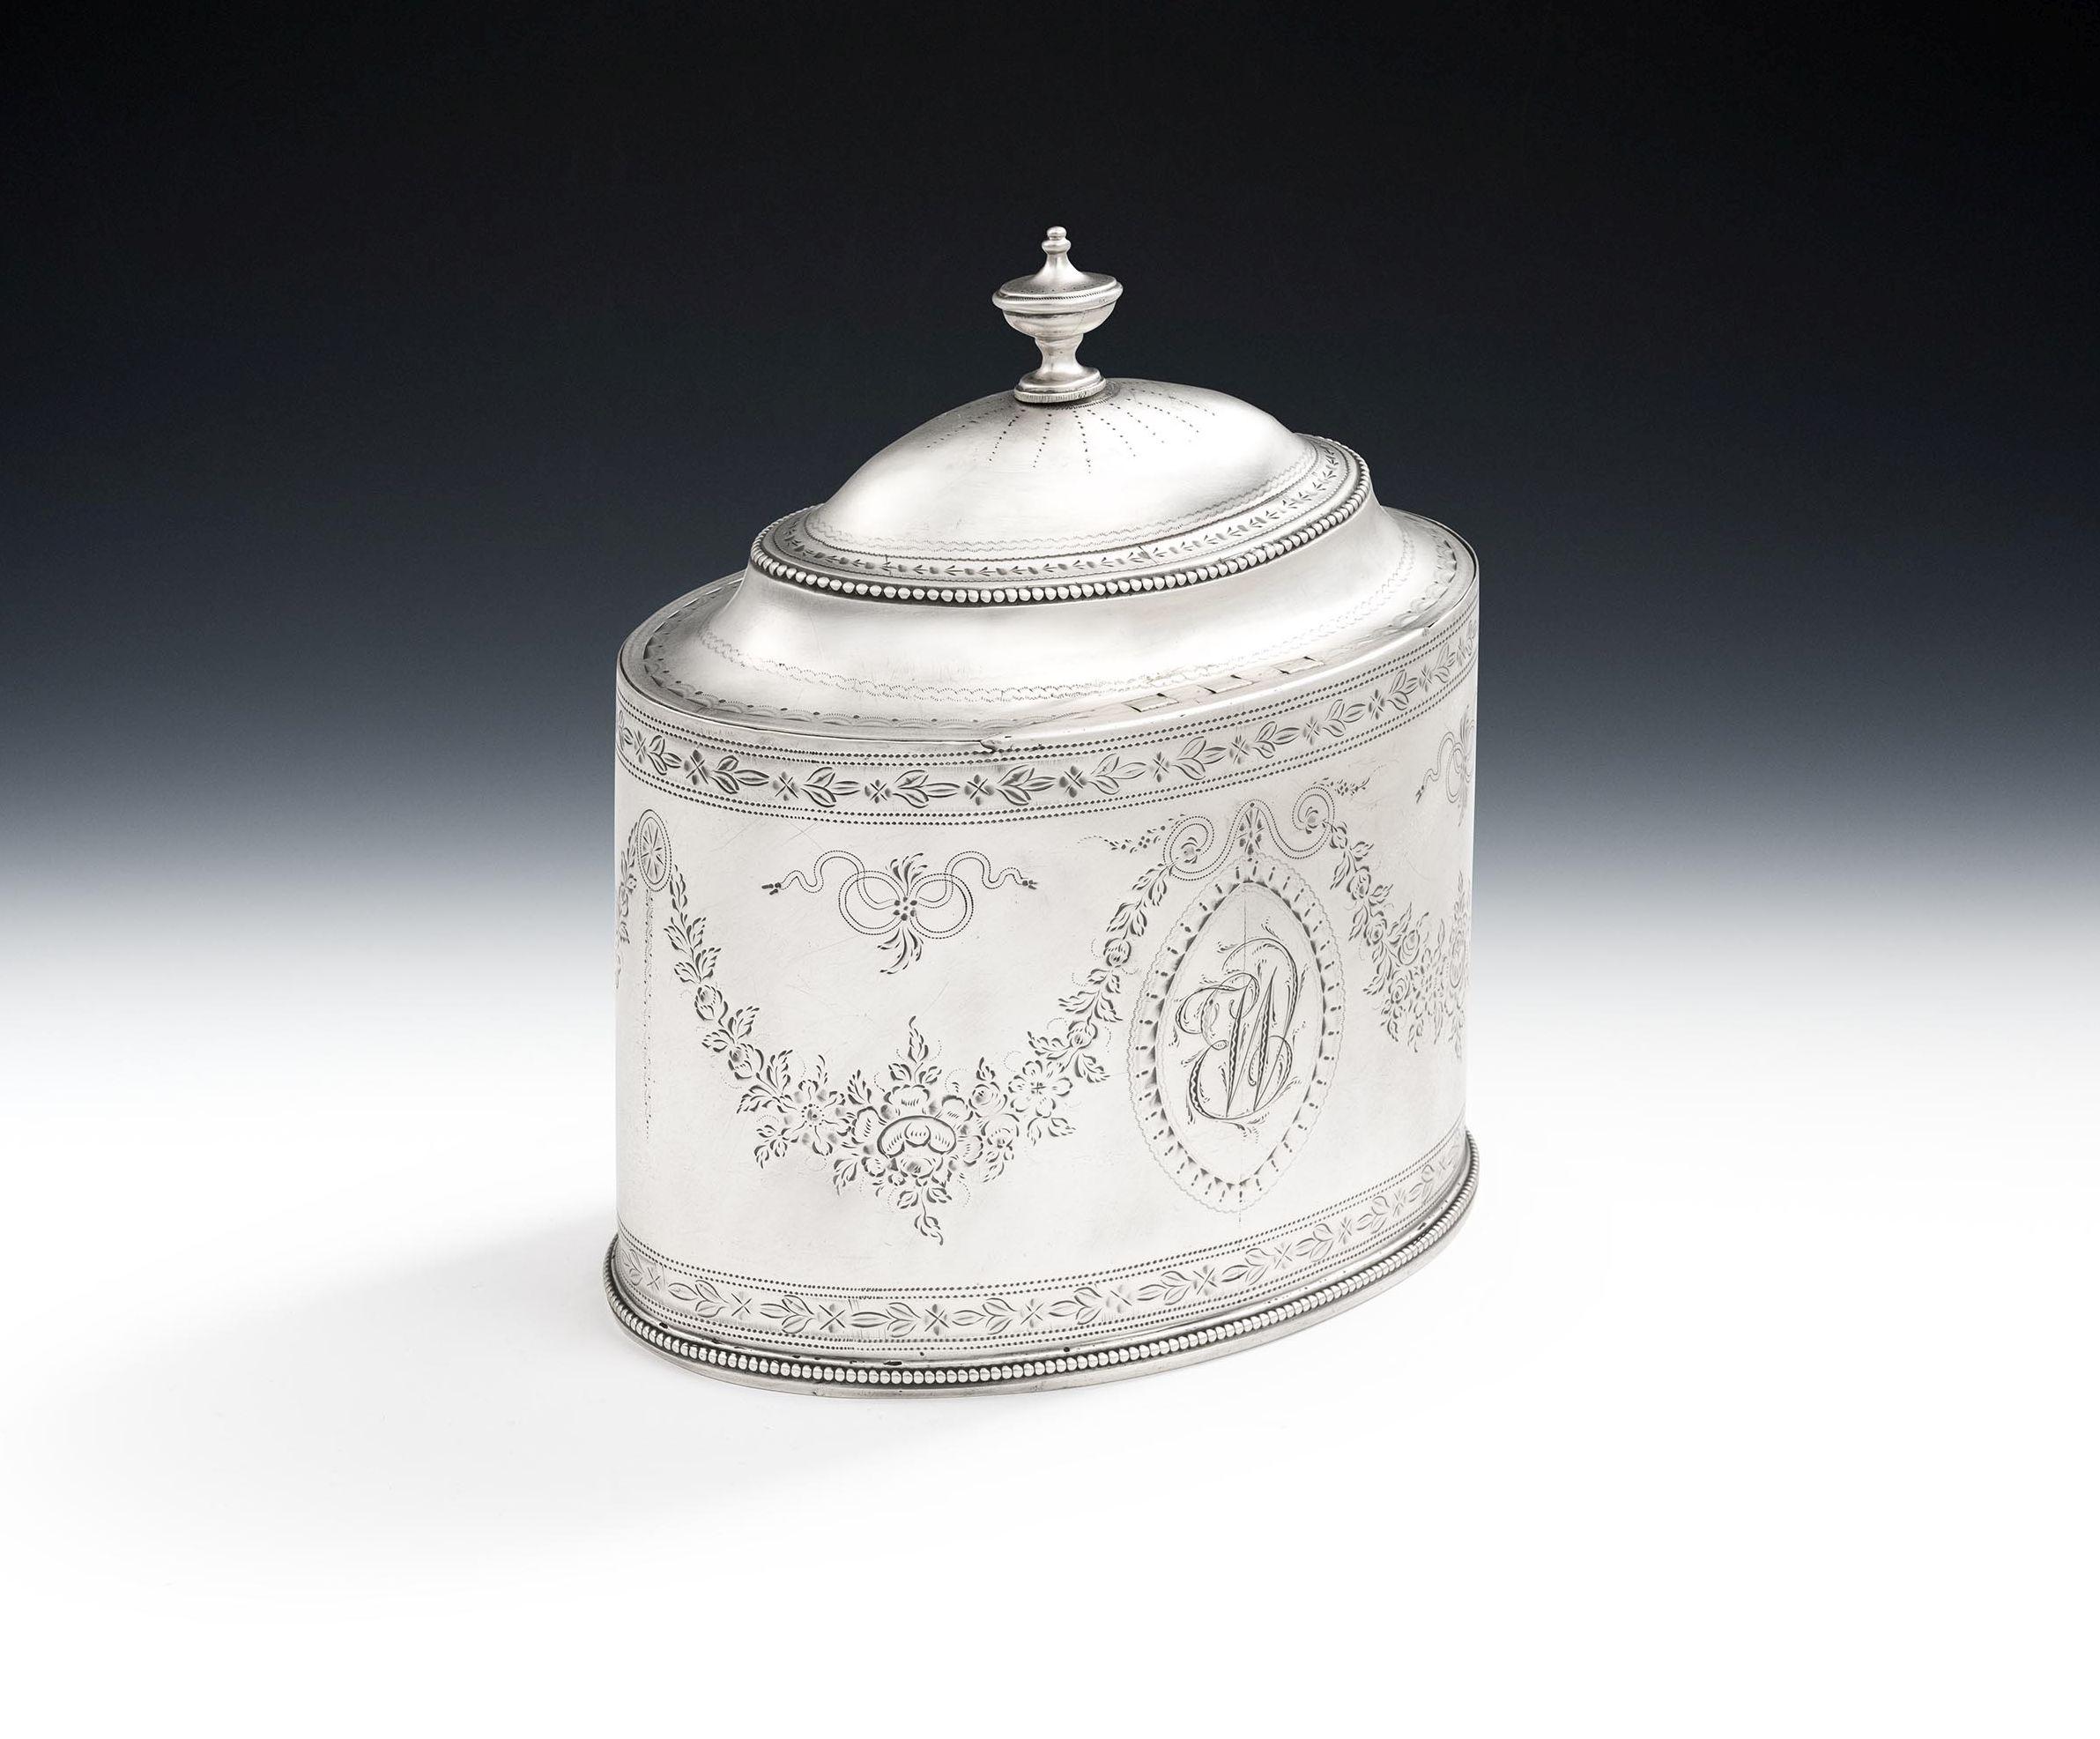 Eine sehr seltene und schöne George III Tea Caddy in London im Jahre 1787 von Hester Bateman gemacht.

Der Tea Caddy ist einem bekannten Entwurf aus den Werkstätten von Hester Bateman nachempfunden.  Dieses schöne Exemplar hat eine ovale Form mit